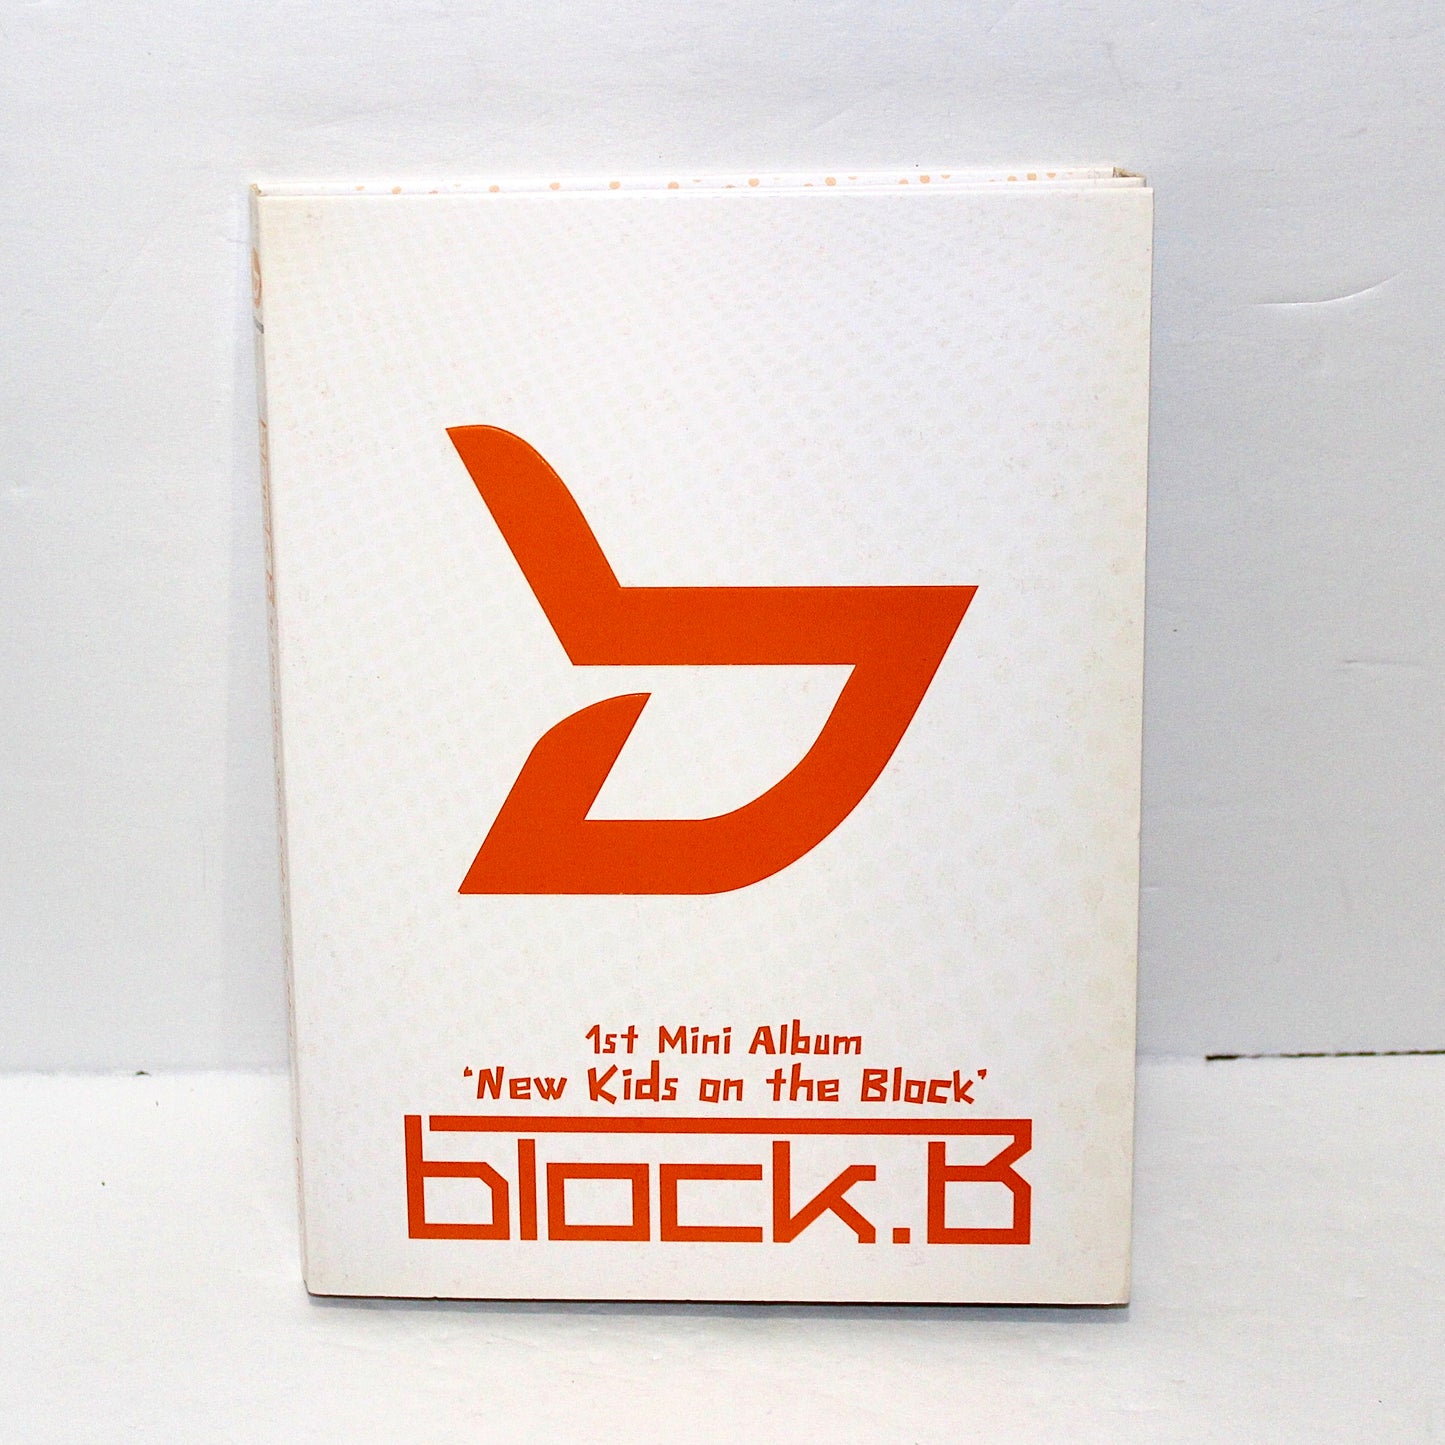 BLOCK B 1st Mini Album: New Kids on the Block